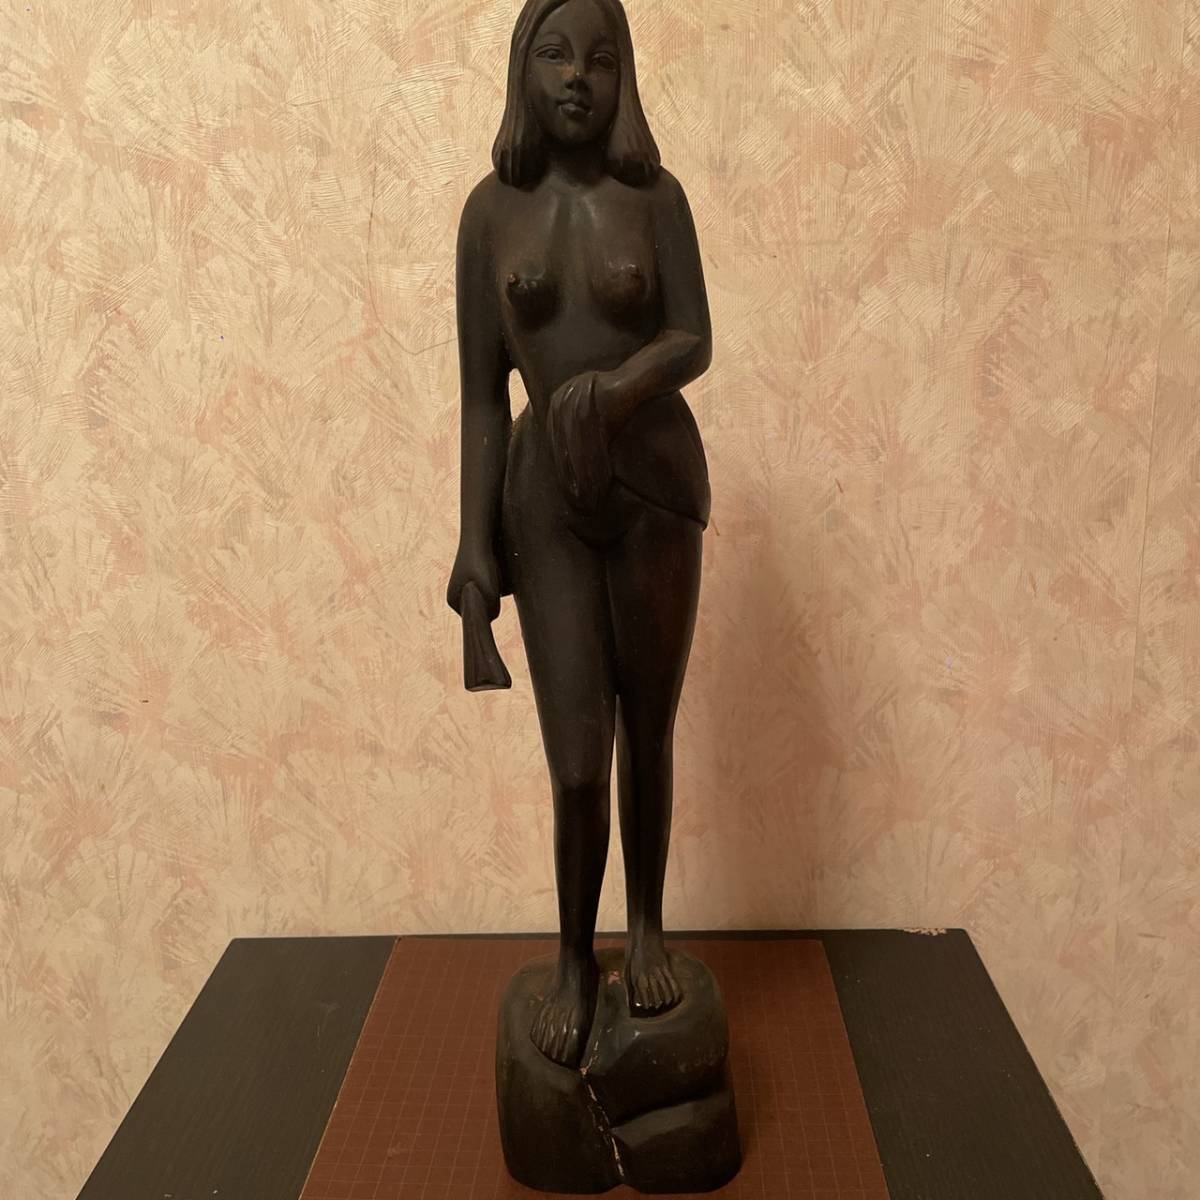 K04 置物 飾り物 裸体像 女人 彫刻 彫 時代 年代 レトロ アンティーク インテリア コレクション fkl68oMOuvyzBQUZ-16208 その他